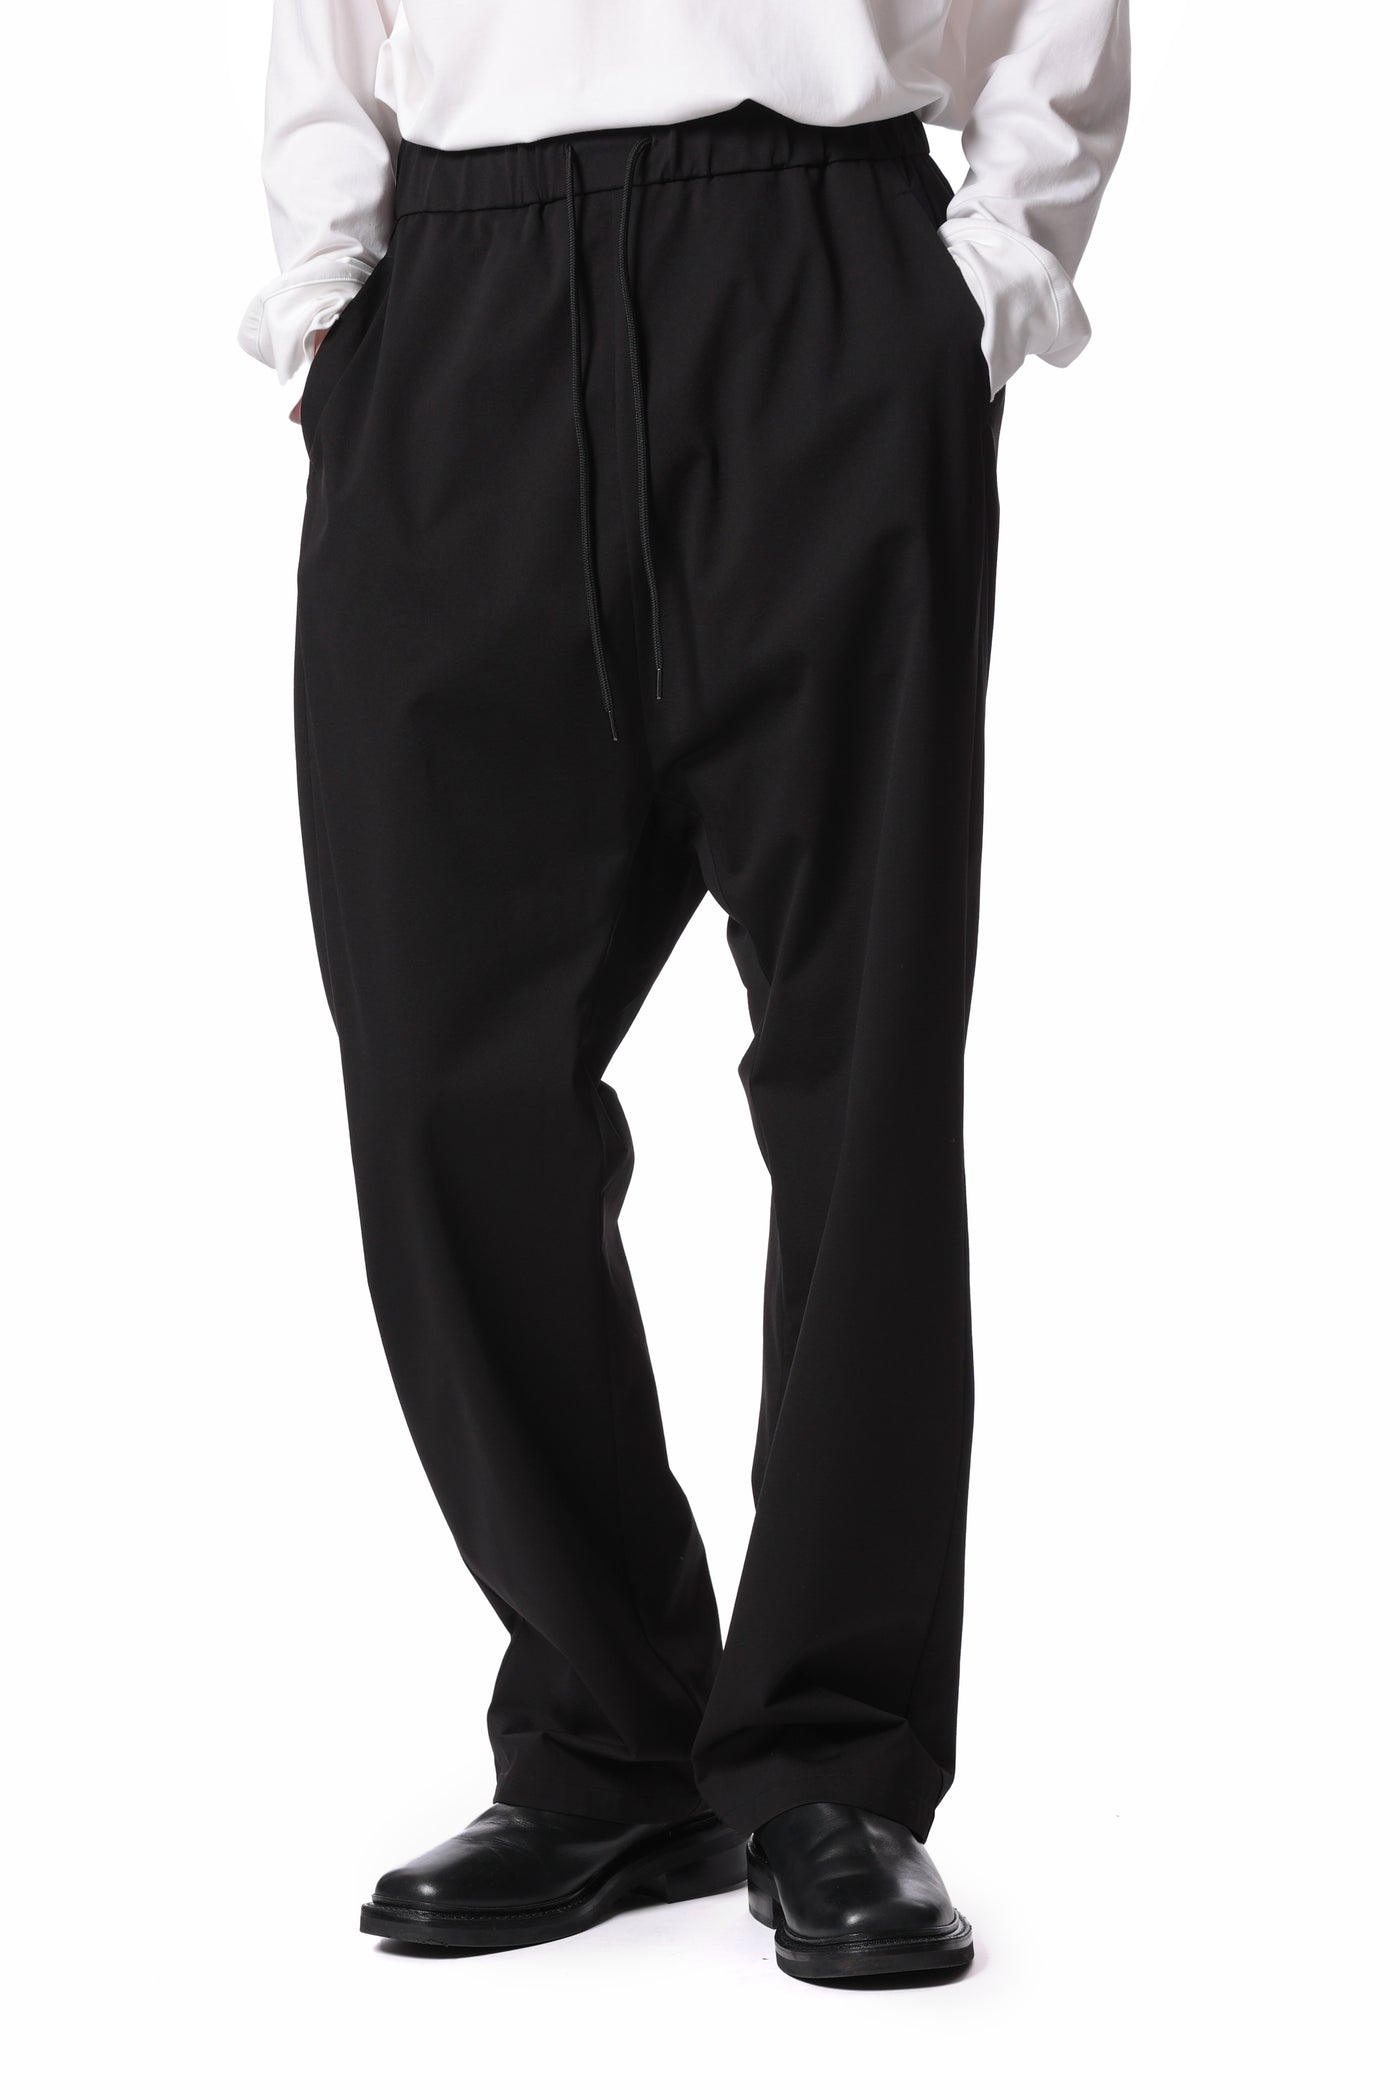 AP41-004 Polyester high gauge jersey sarouel pants